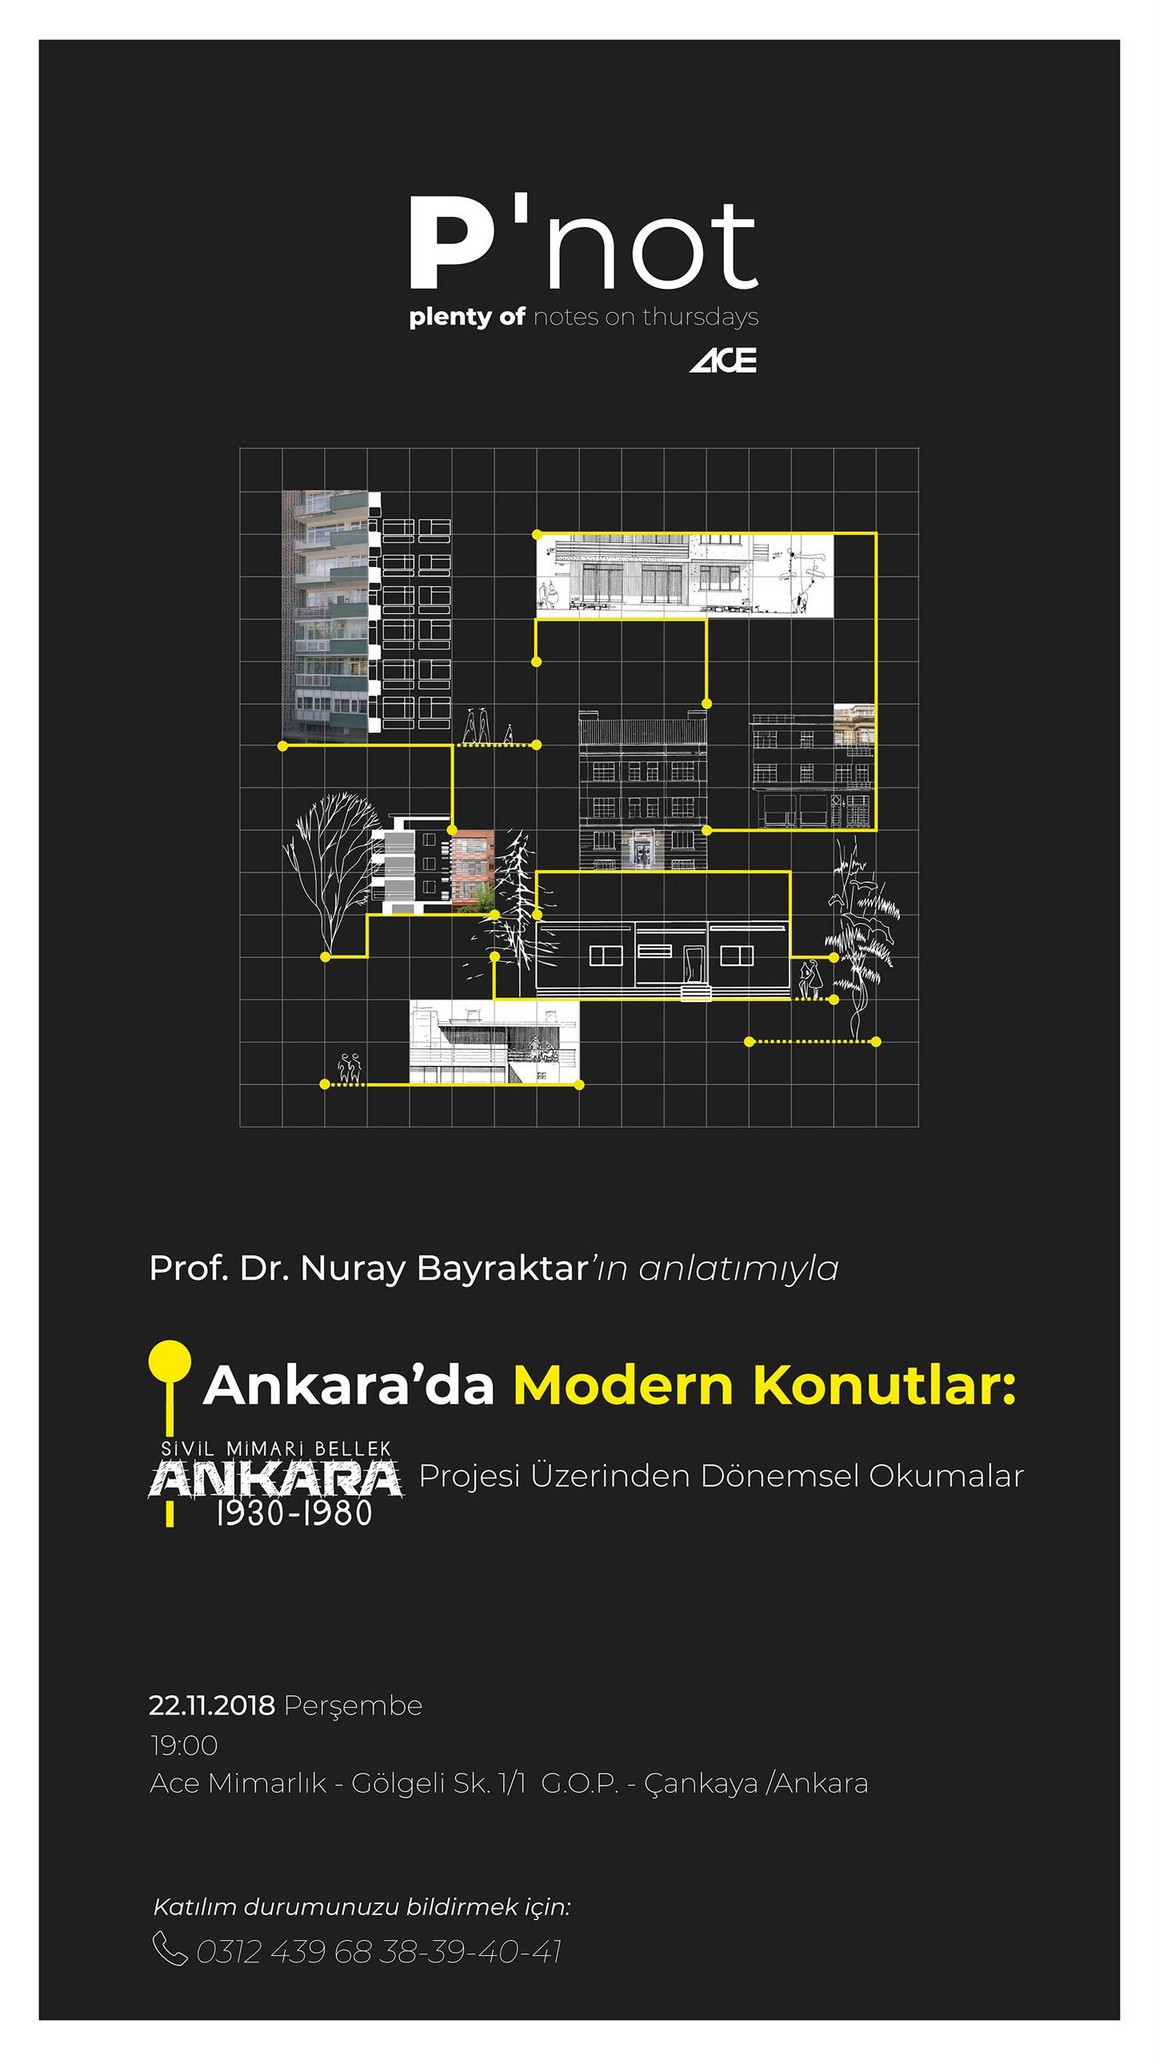 Ankara'da Modern Konutlar: "Sivil Mimari Bellek Ankara" Projesi Üzerinden Dönemsel Okumalar